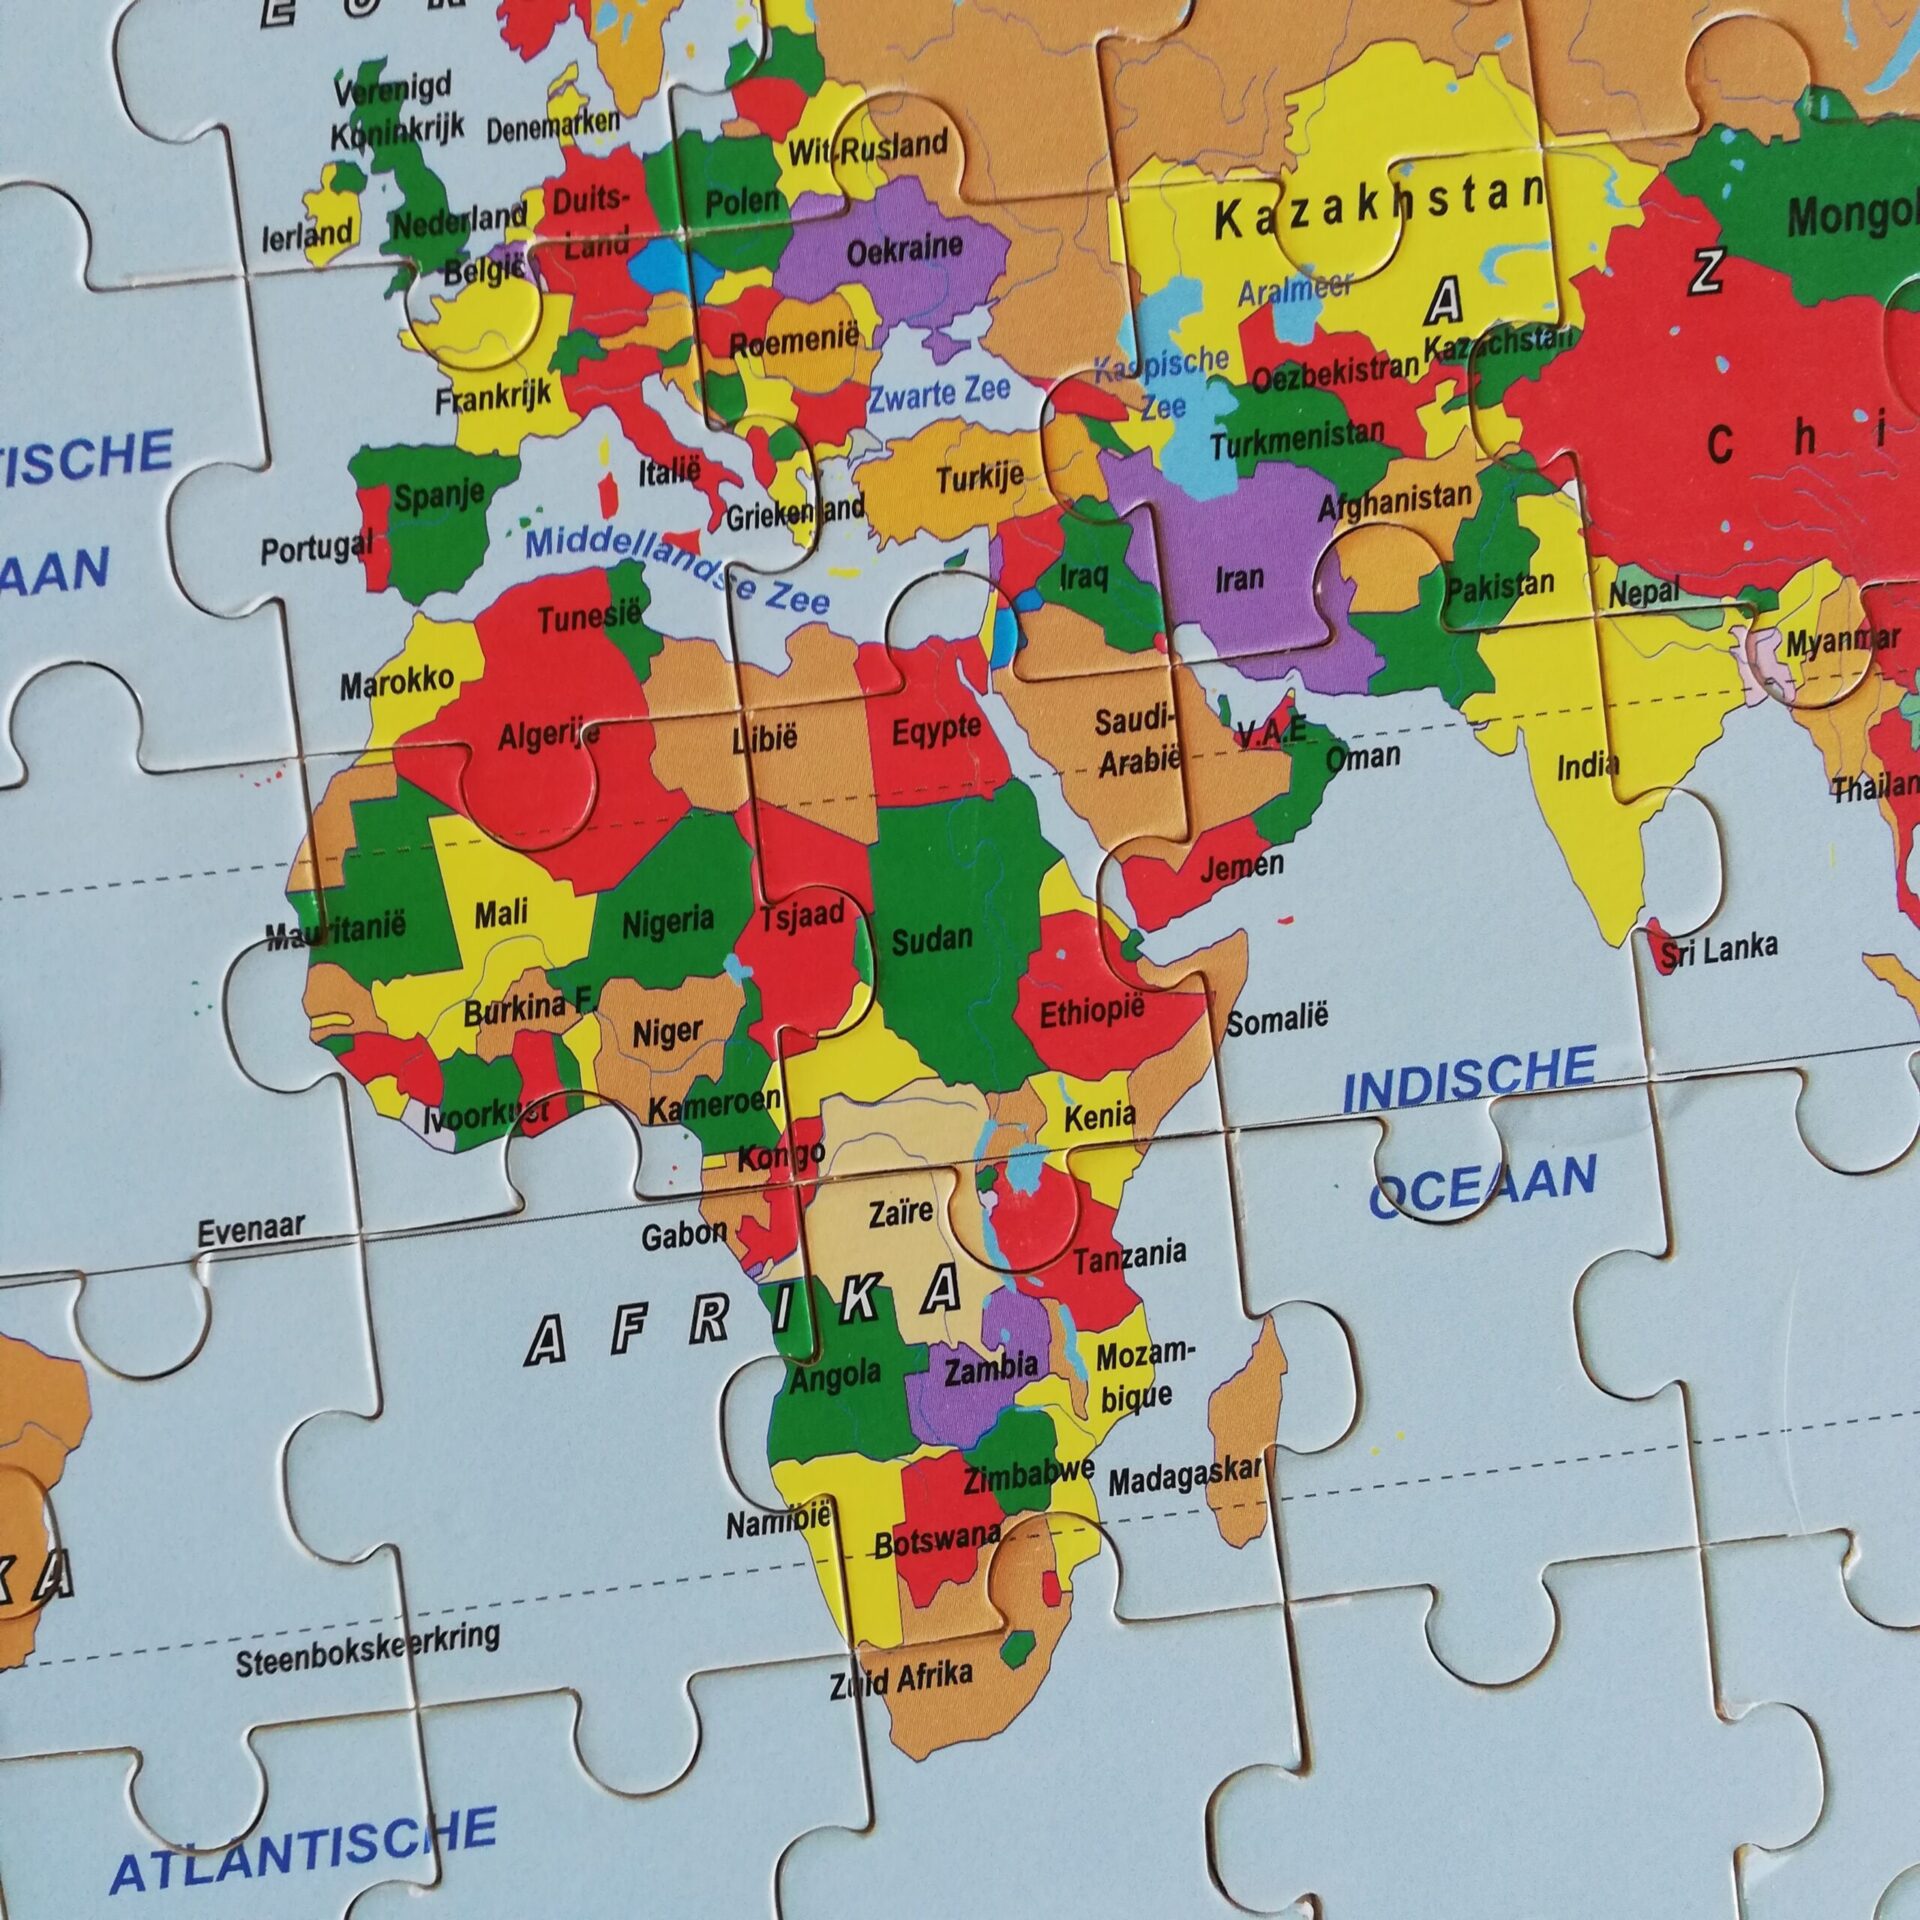 Albany Werkelijk leeg Houten puzzel van de hele wereld - Te koop @ EvenSnuffelen